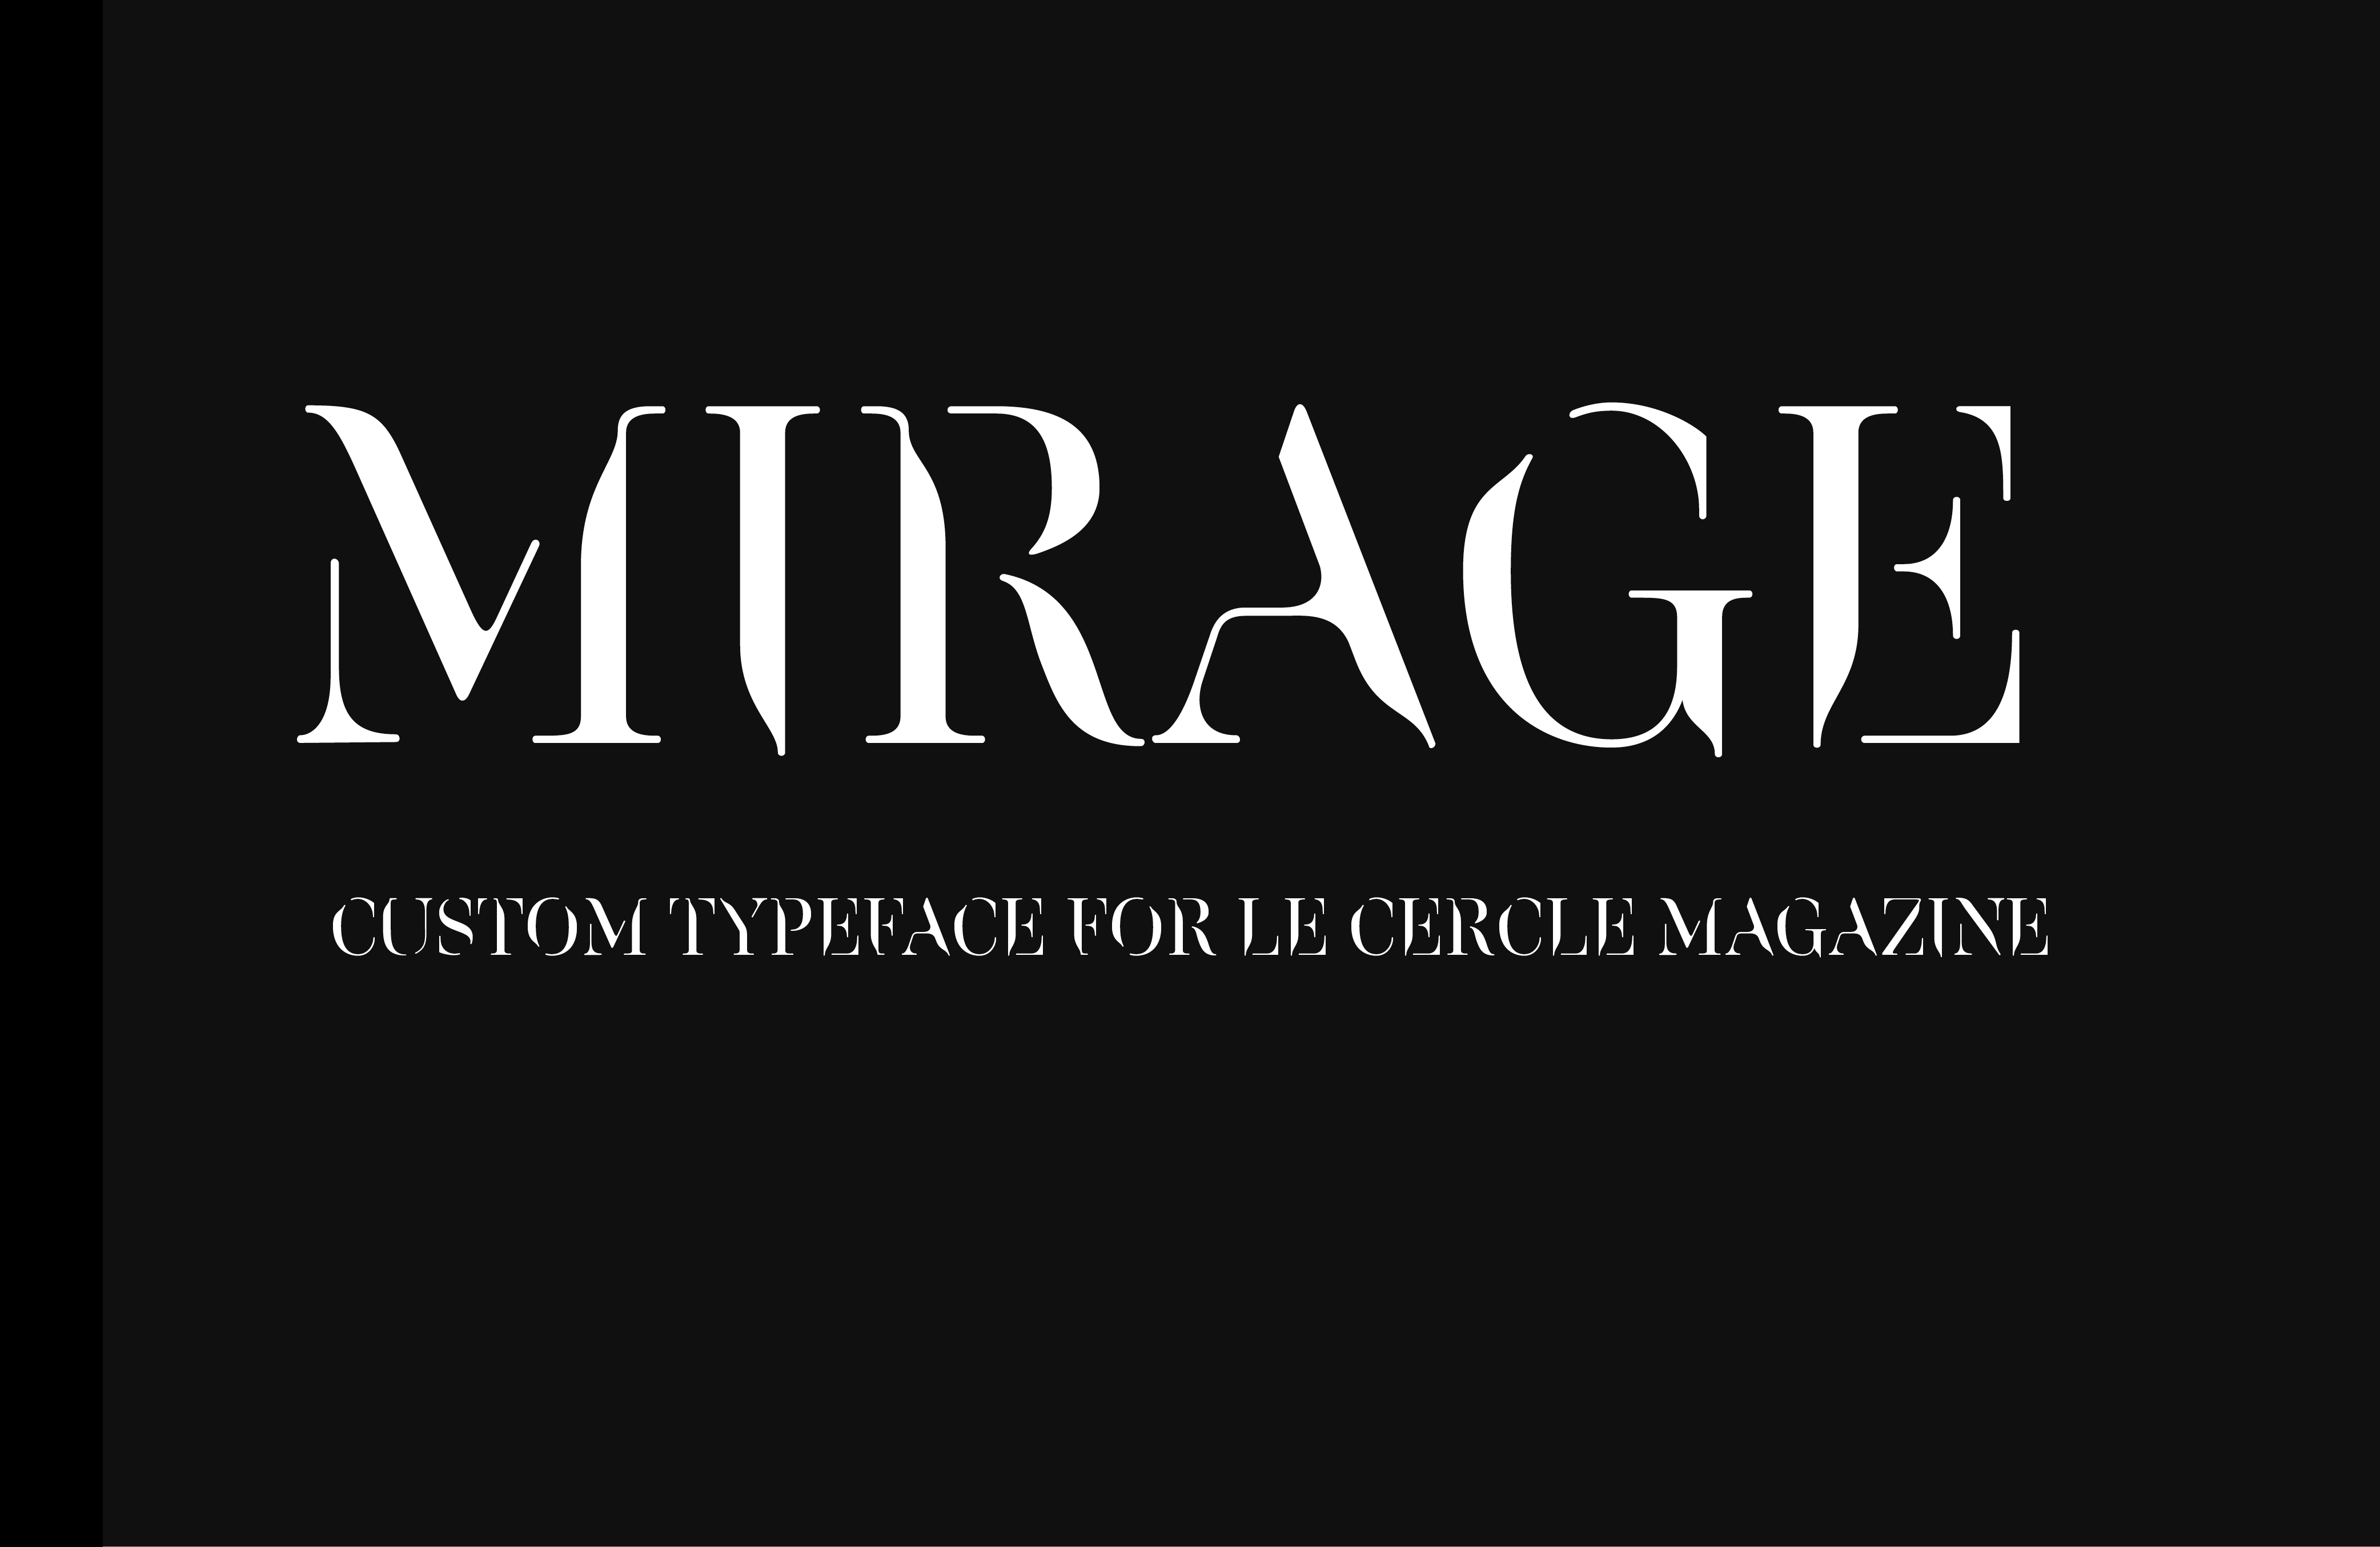 specimen futago typeface